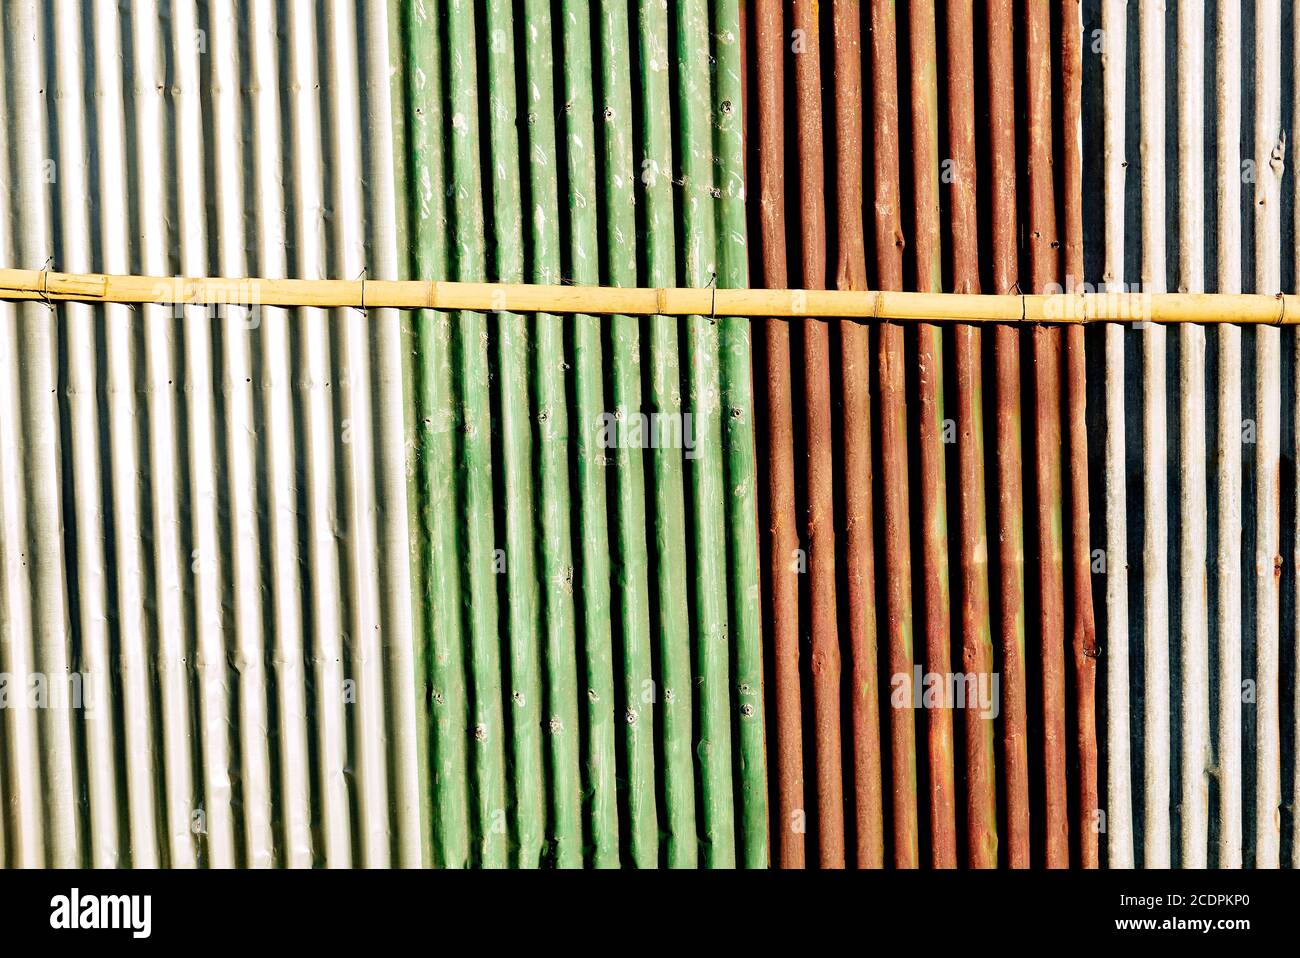 Le mur ondulé peint multicolore donne des teintes horizontales, des rayures. Un bâton de bambou horizontal maintient la clôture rouillée ensemble. Banque D'Images